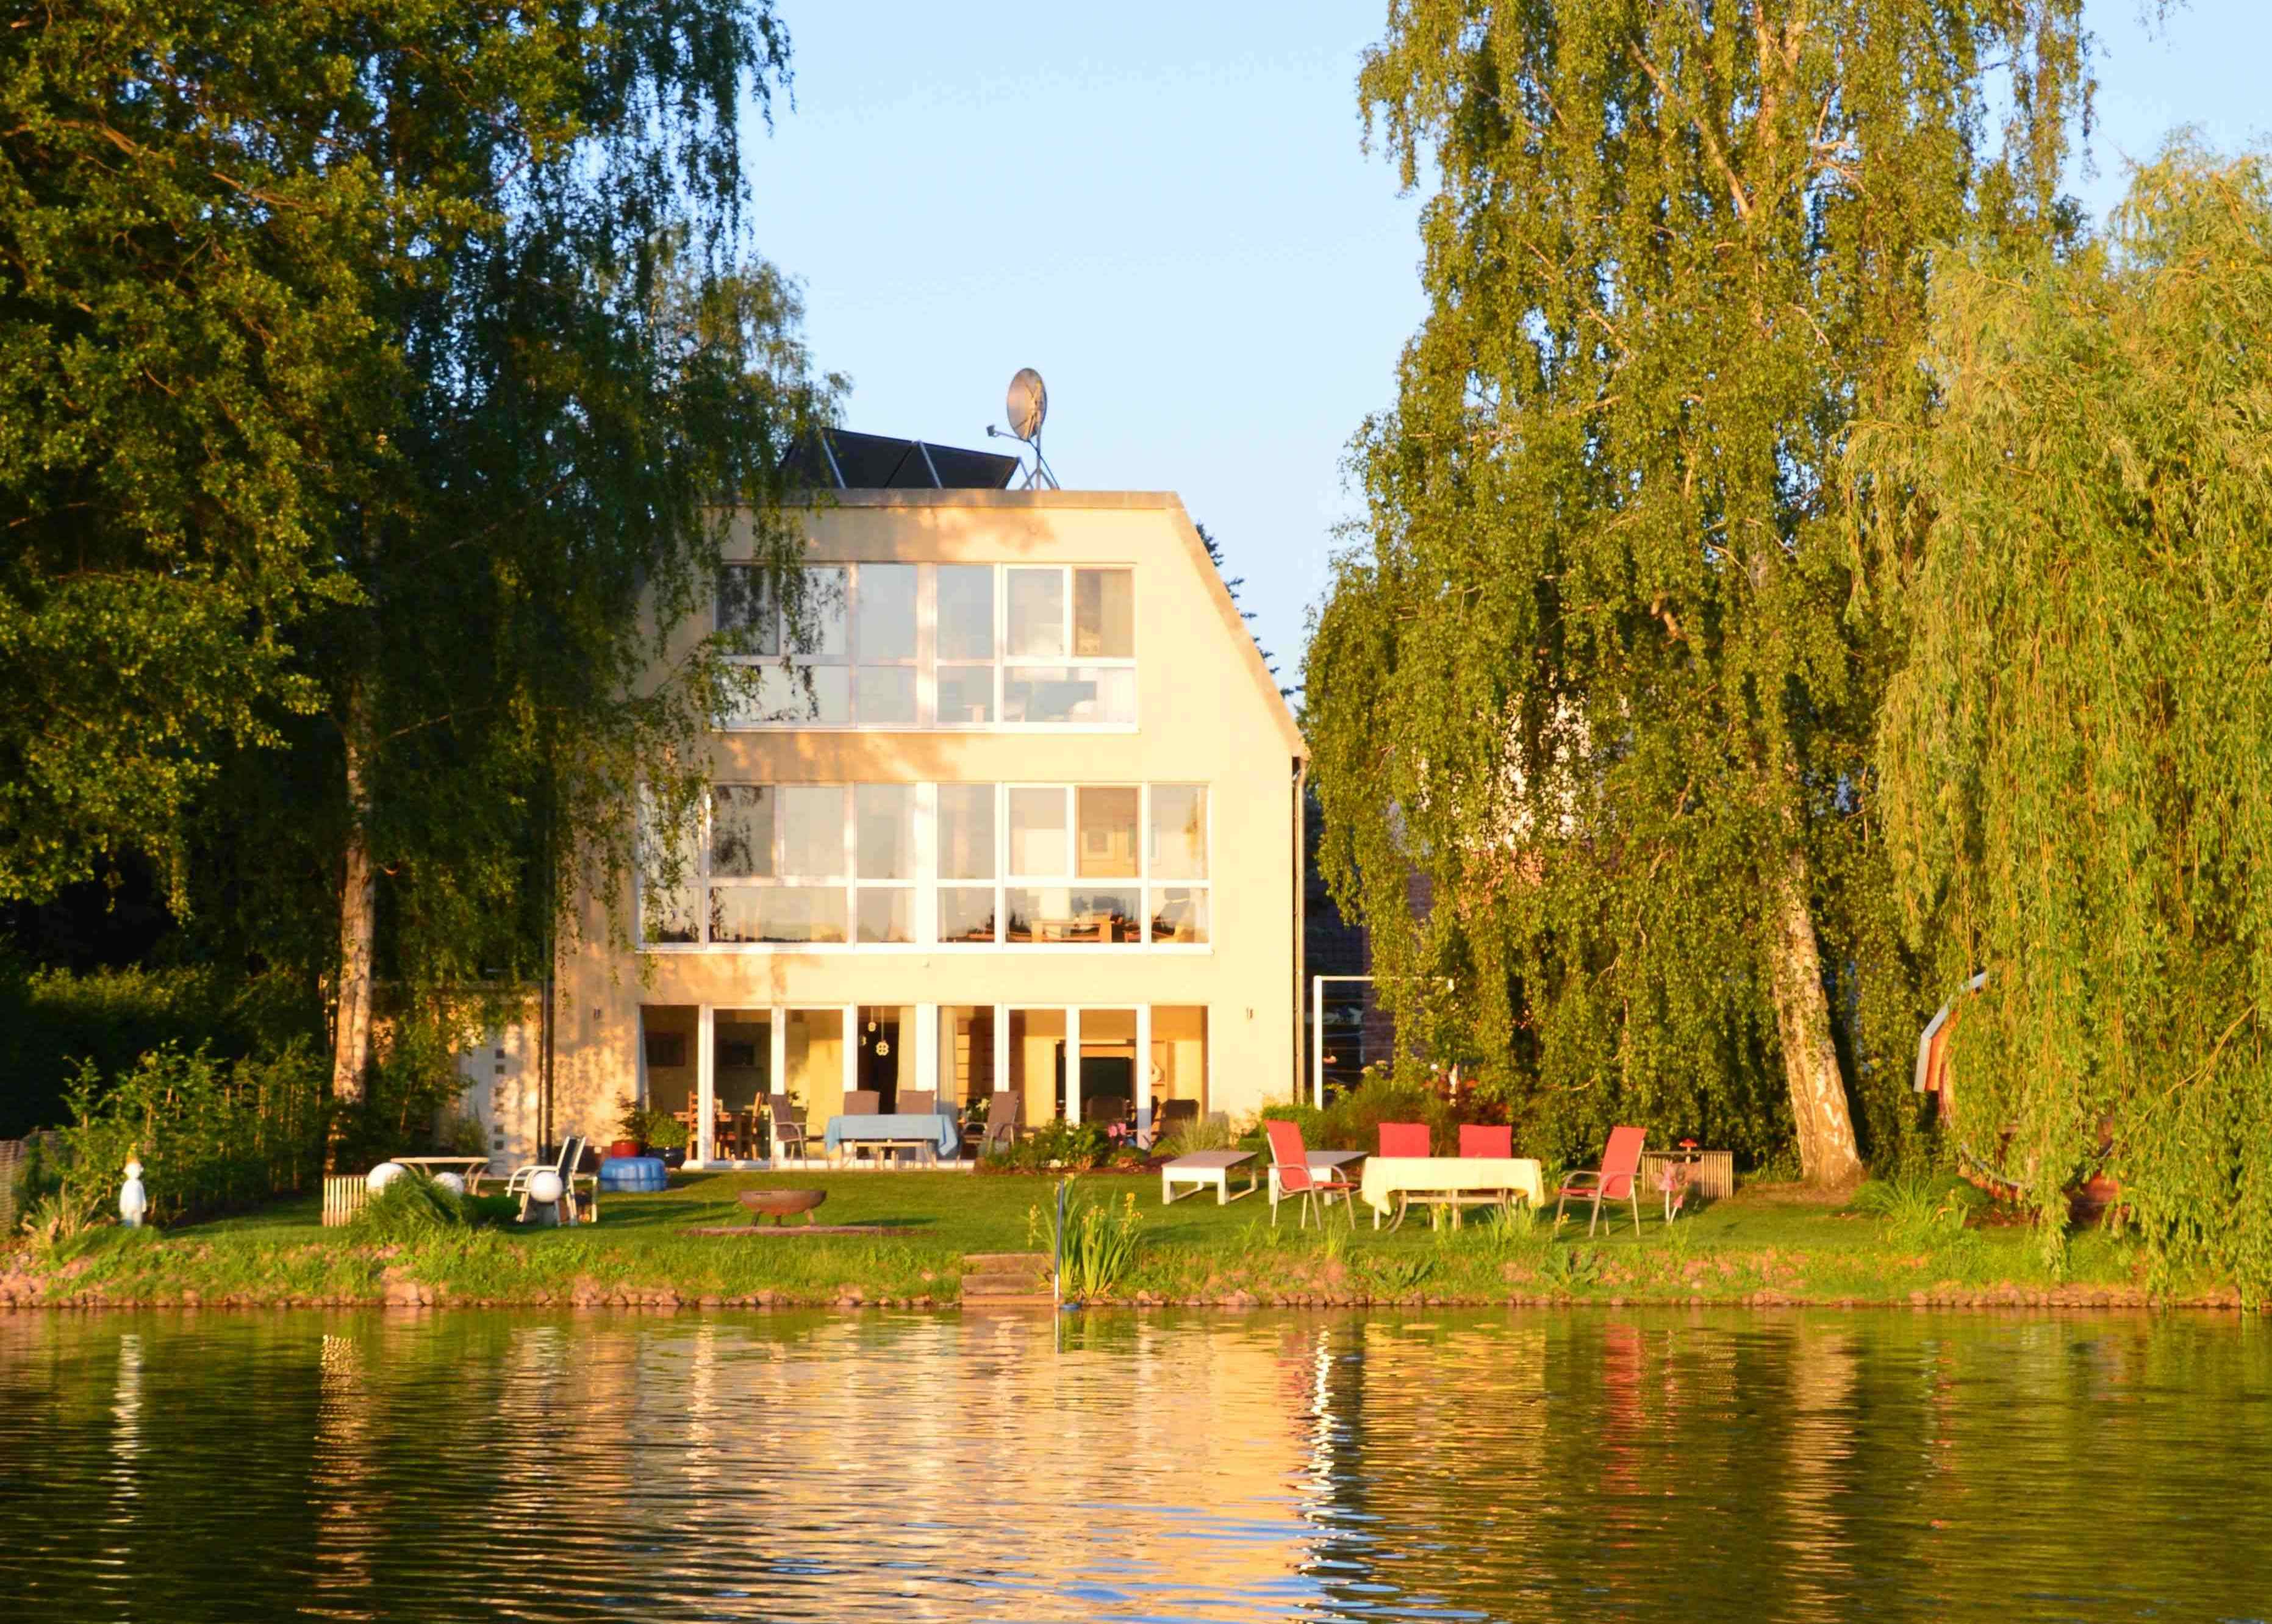 Ferienhaus direkt am See, Ansicht Seeseite mit der Liegewiese und dem Seeufer